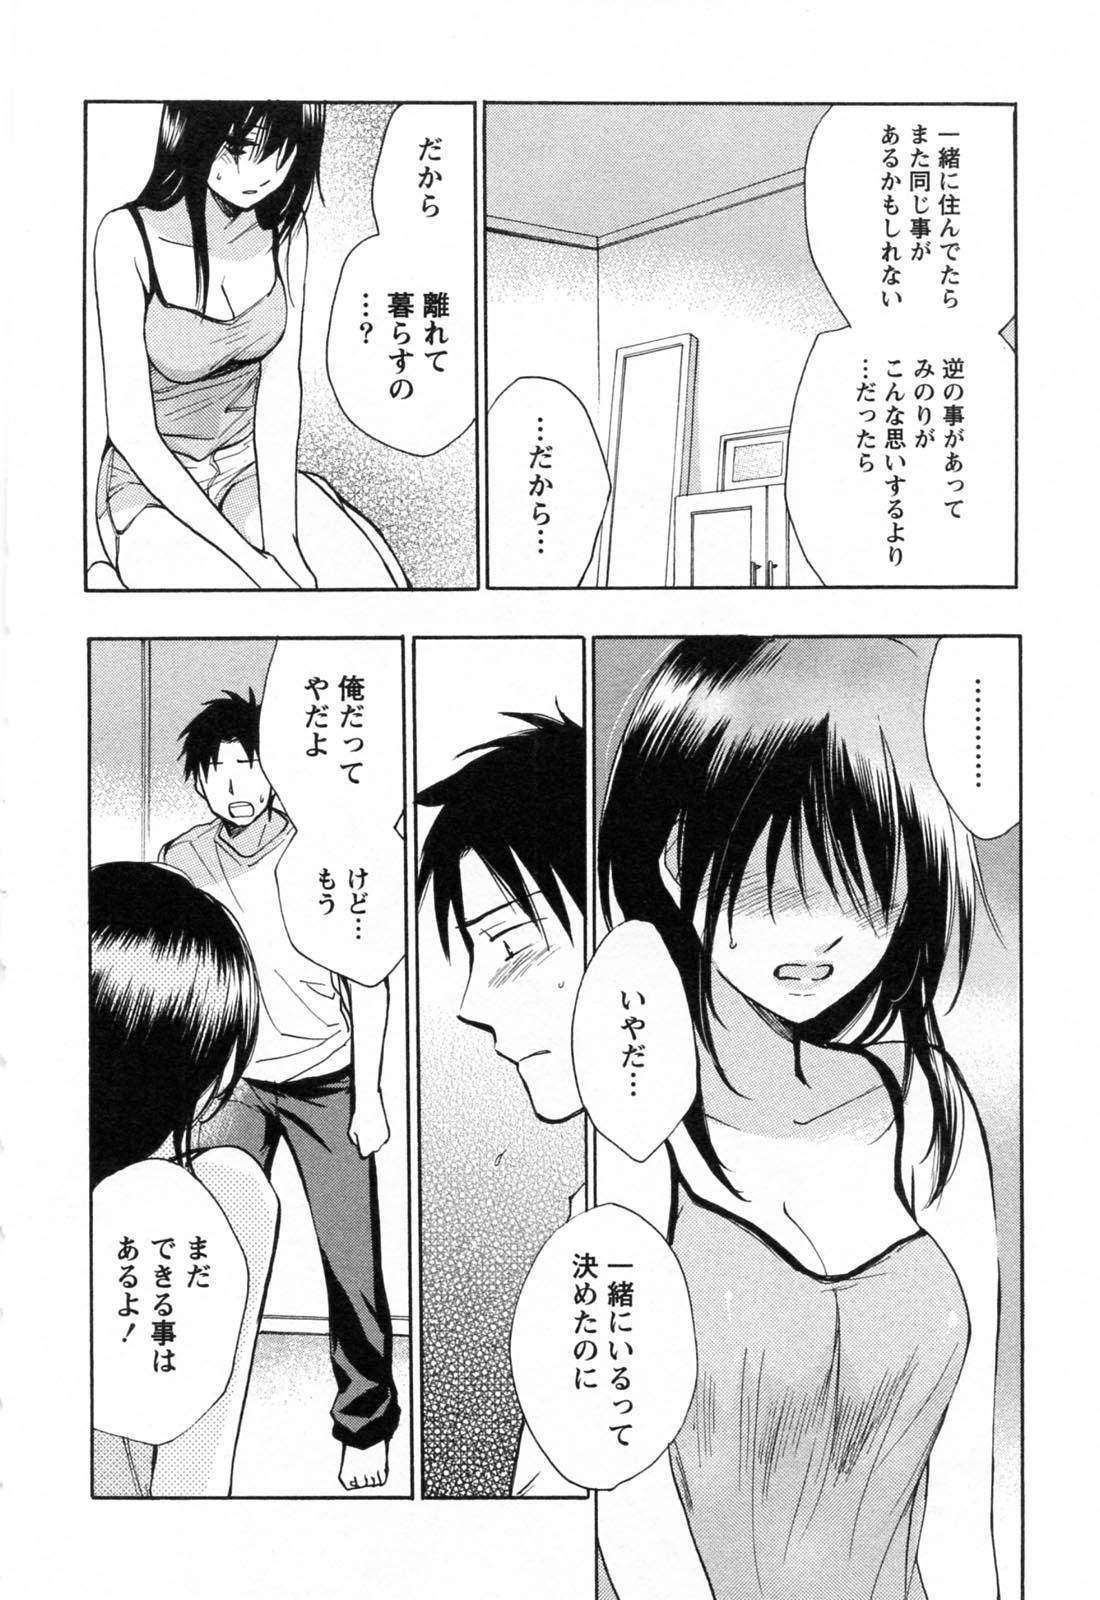 Milf Sex Koi o Suru no Ga Shigoto Desu. - Falling In Love Is Work. 3 Storyline - Page 9